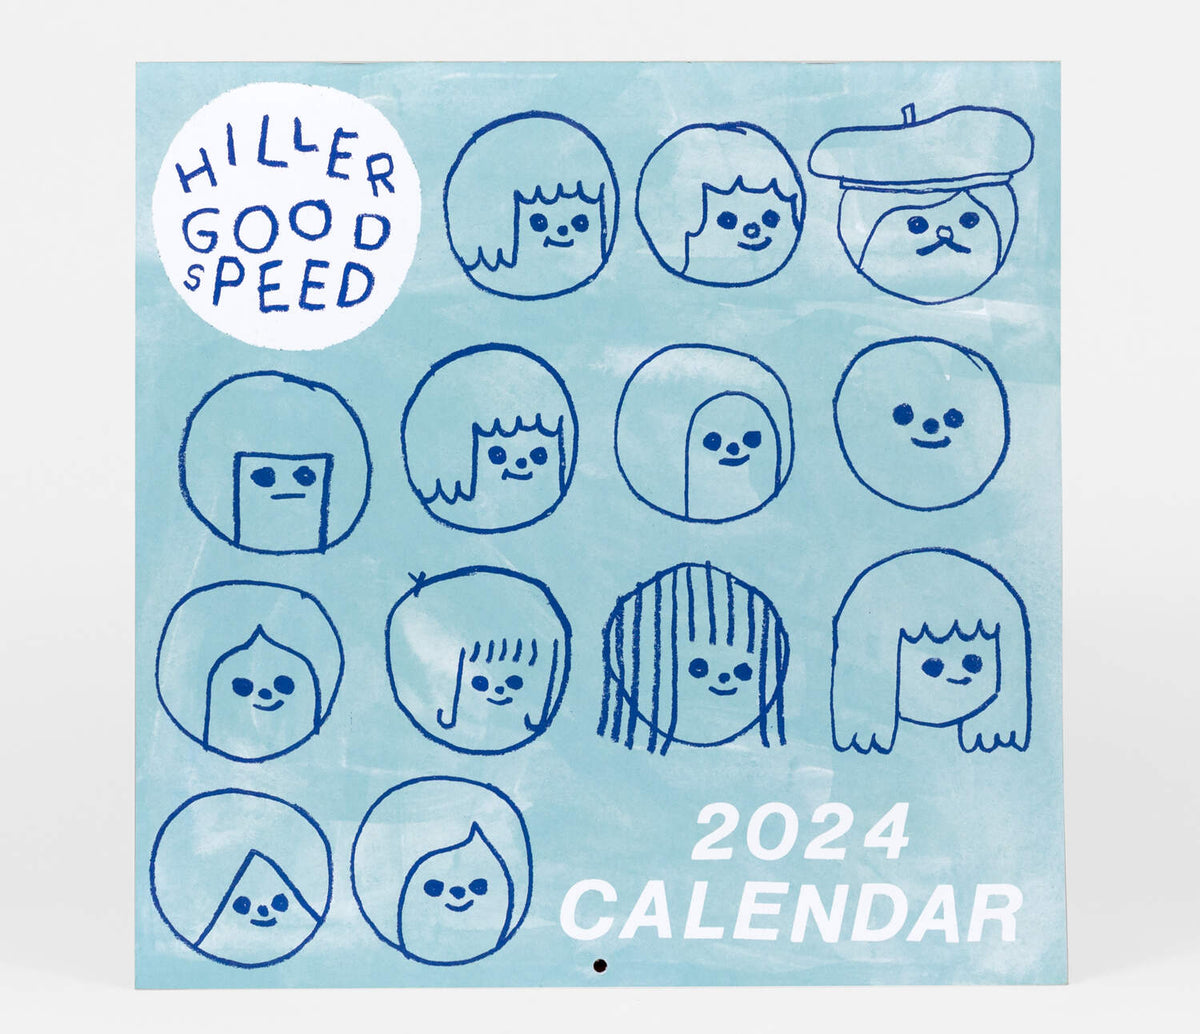 Hiller Goodspeed 2024 Calendar Kindred Post